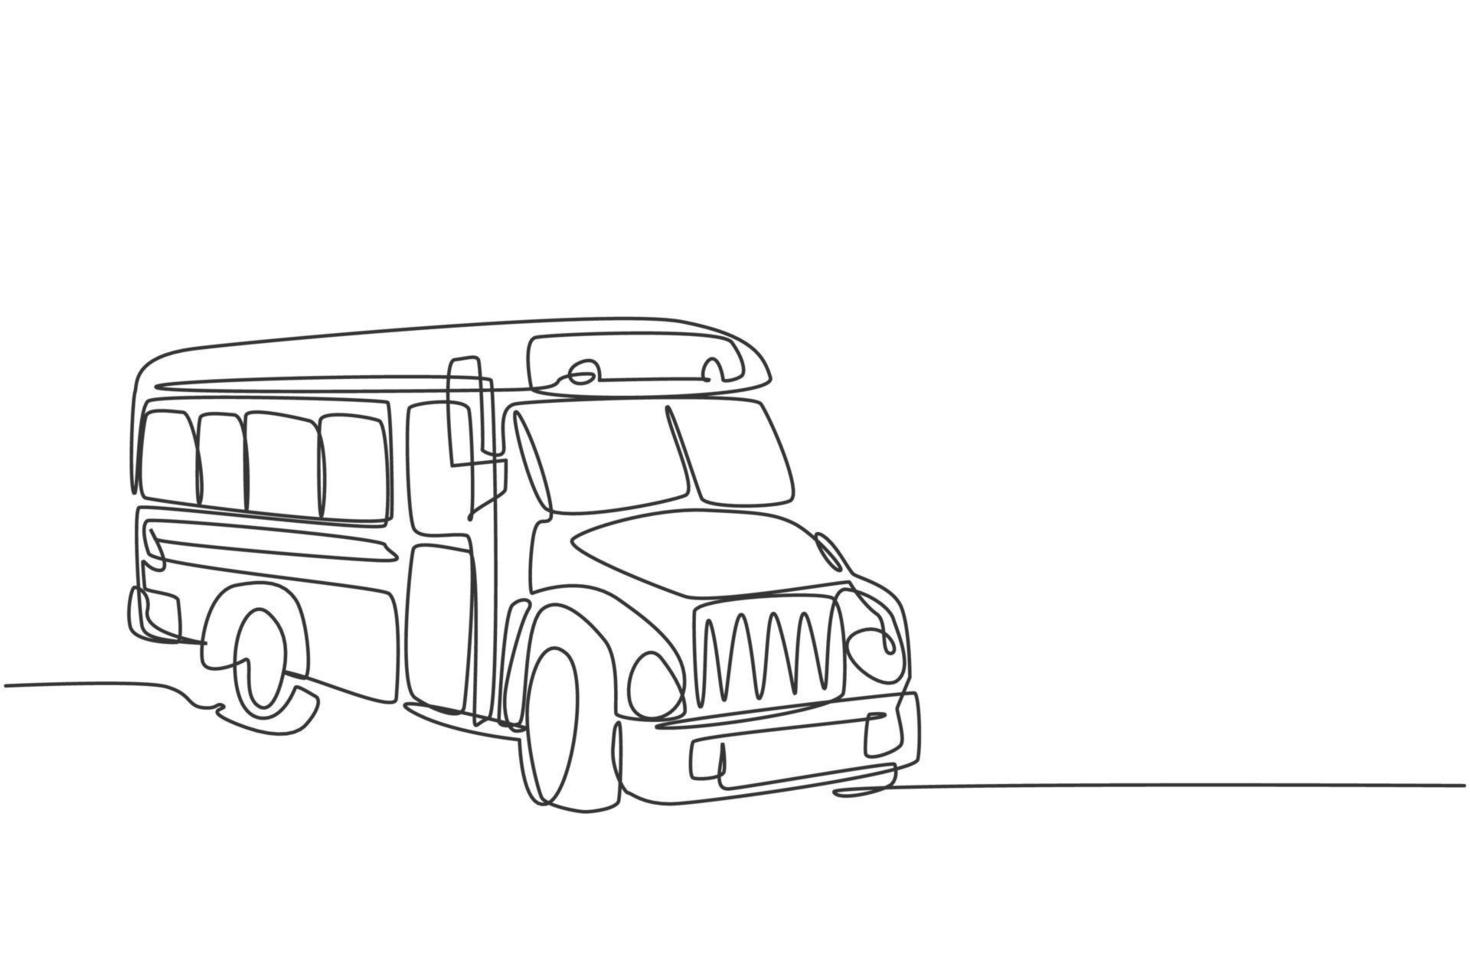 trasporto continuo di un vecchio autobus scolastico classico per studenti americani. torna a scuola concetto di minimalismo disegnato a mano. disegno a linea singola per l'illustrazione grafica vettoriale dell'istruzione